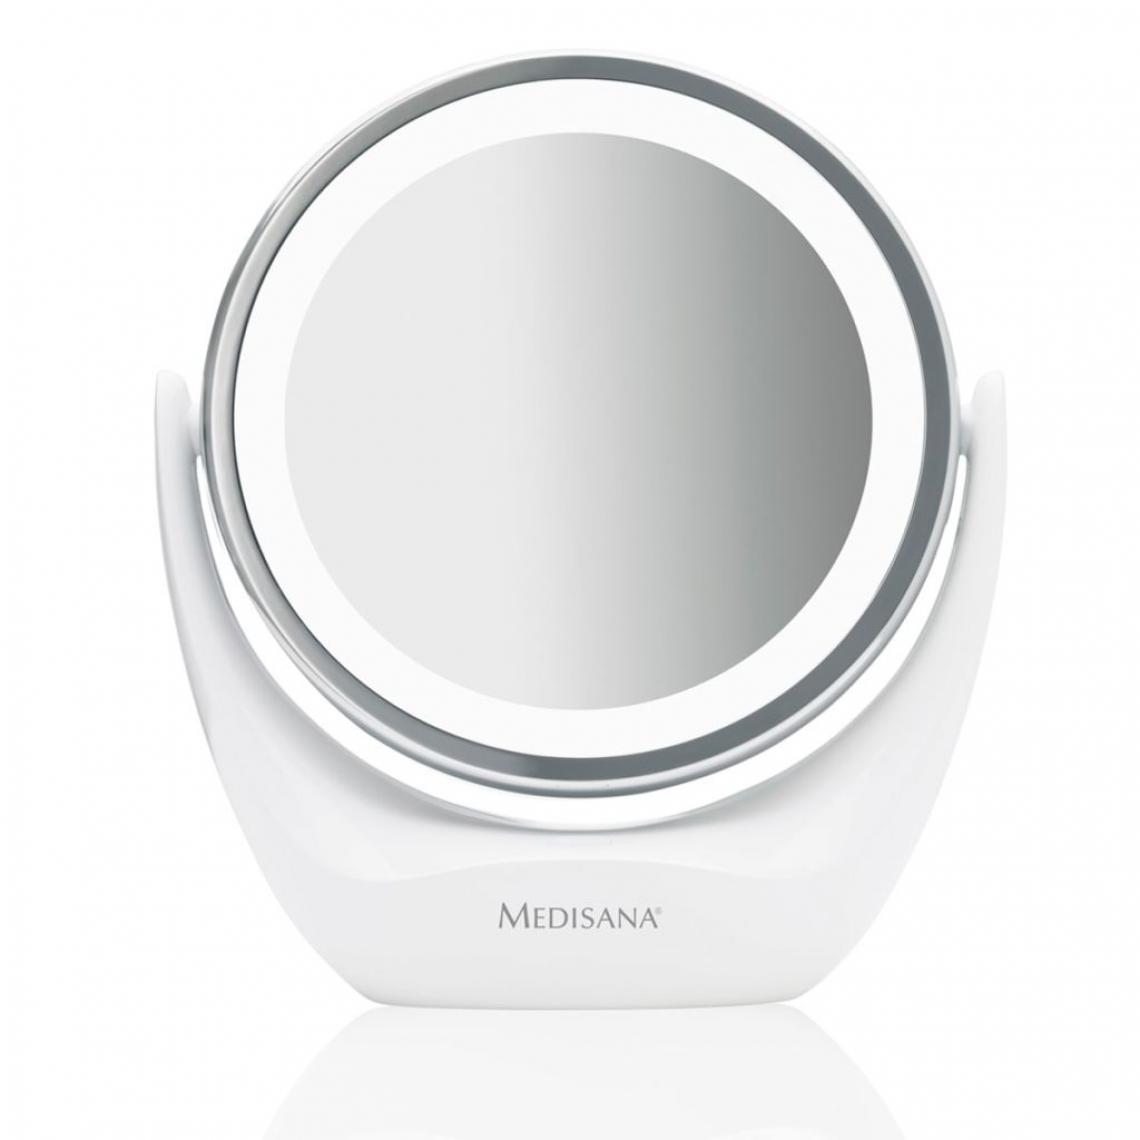 Icaverne - Admirable Accessoires de maquillage ligne Bakou Medisana Miroir cosmétique 2-en-1 CM 835 12 cm Blanc 88554 - Maquillage et coiffure